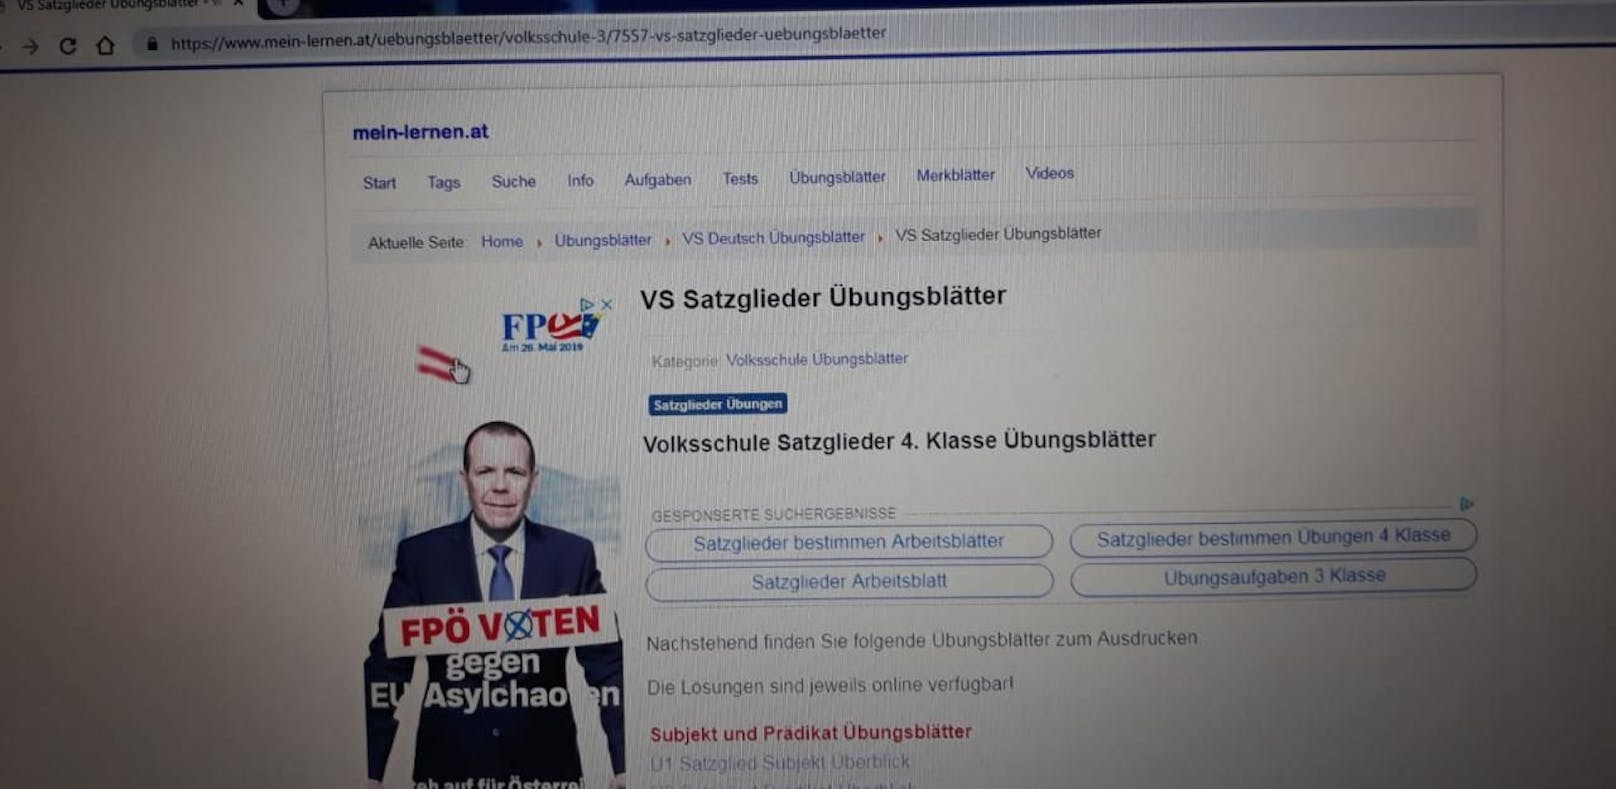 Auf einer Internetseite, von der sich Schüler Übungsblätter downloaden können, war diese FPÖ-Werbung zu sehen. Das wiederum empört die SPÖ.